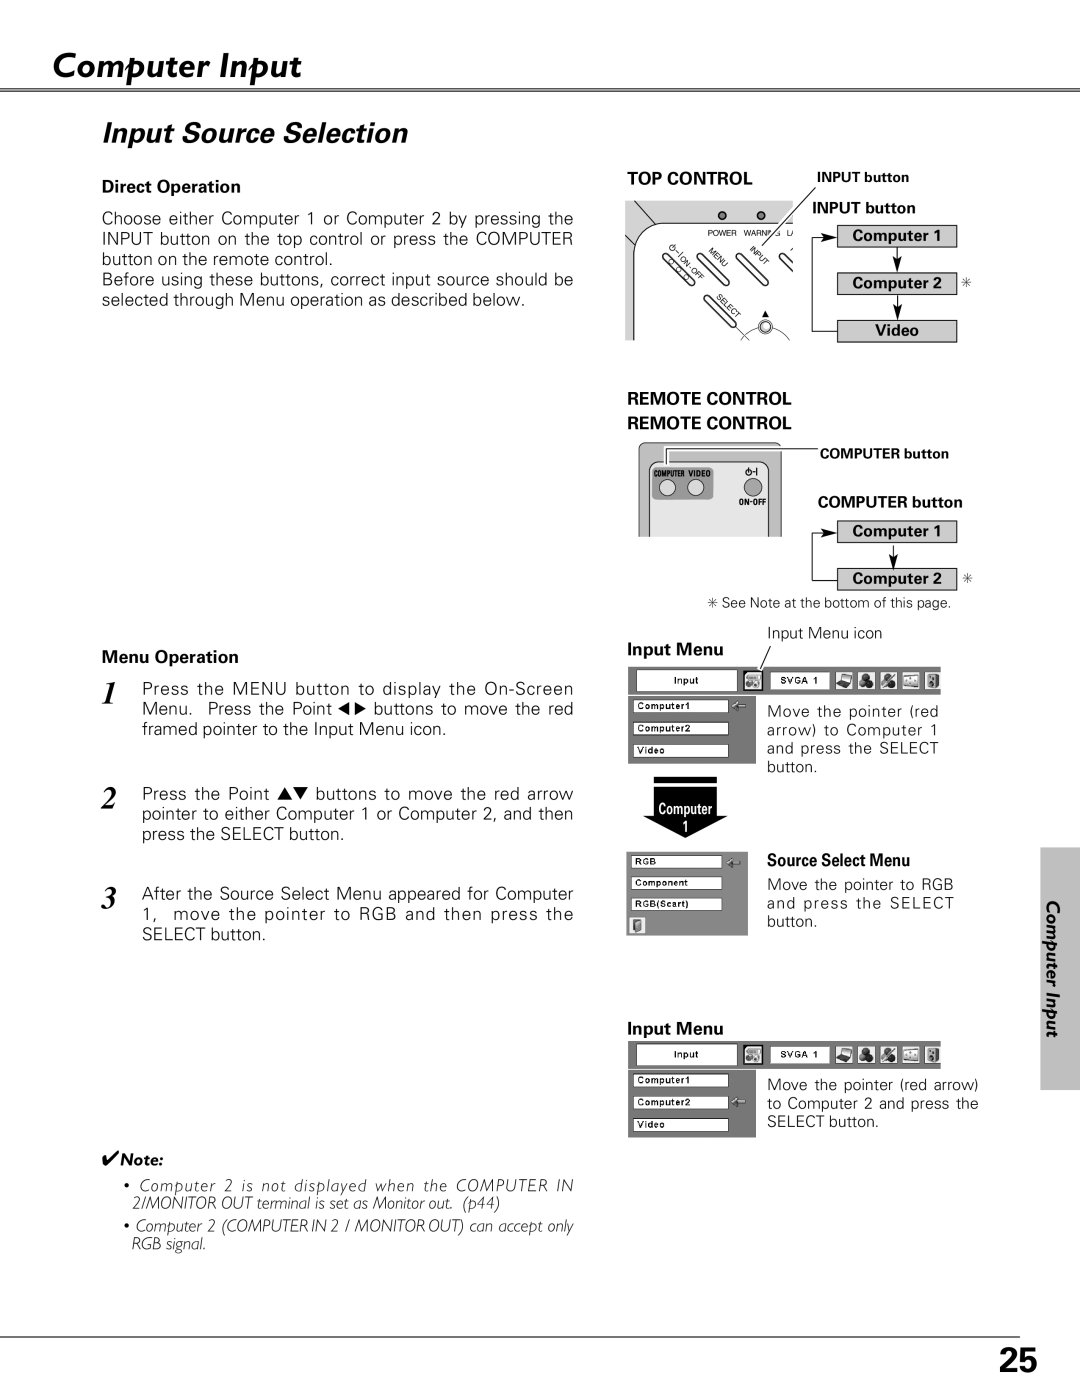 Eiki LC-XB23 owner manual Computer Input, Input Source Selection, Direct Operation, Top Control, Menu Operation, Input Menu 